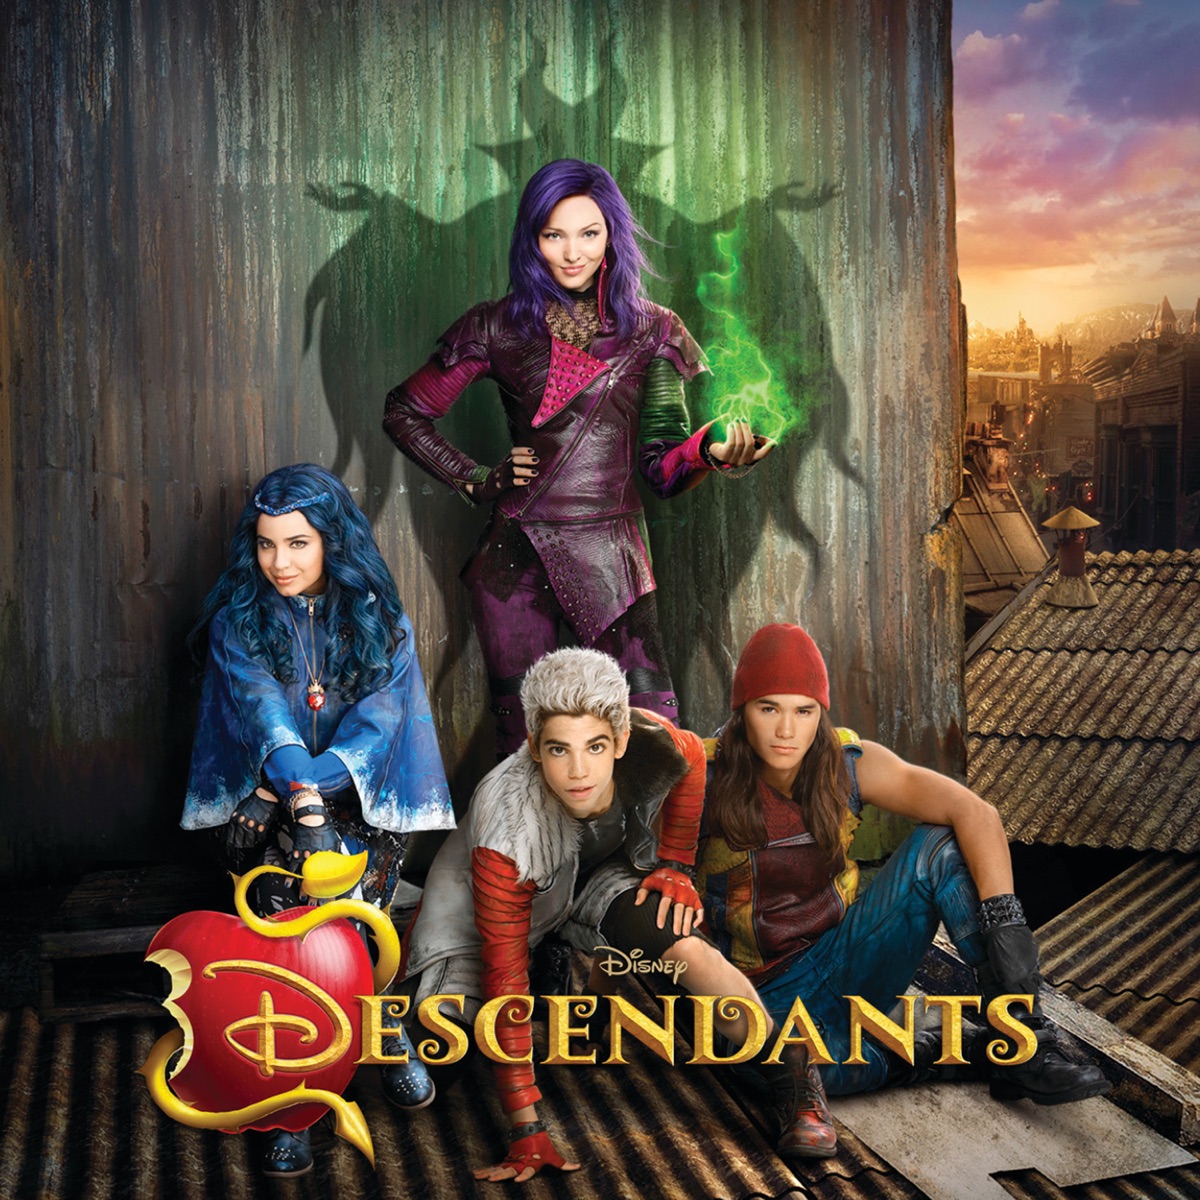 Dove Cameron, Sofia Carson & China Anne McClain - Descendants (Original TV Movie Soundtrack)